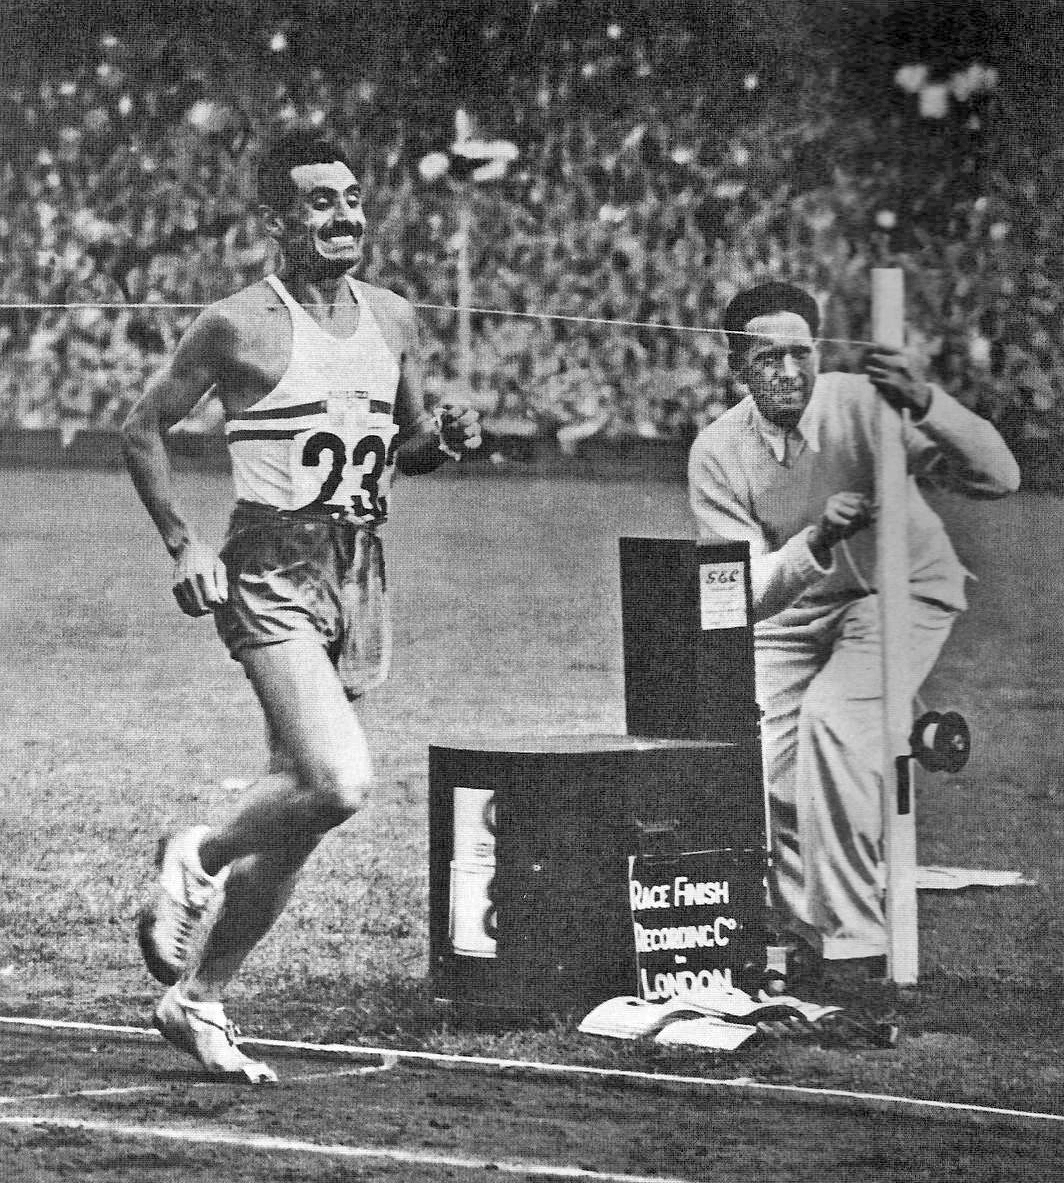 ¿Quién fue el primer deportista argentino en ganar una medalla olímpica